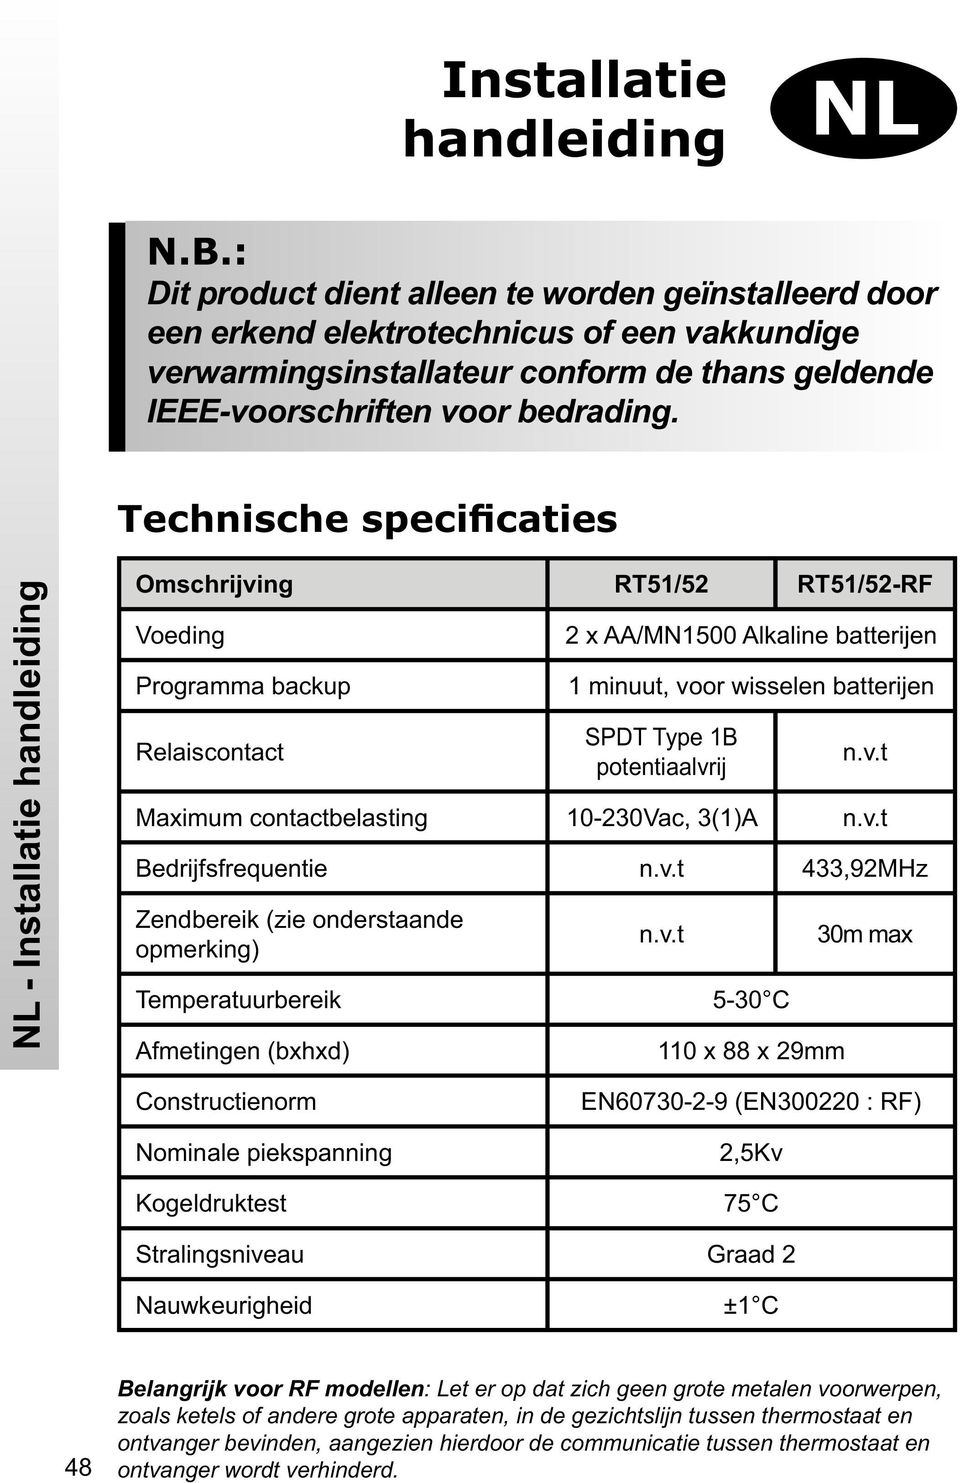 Technische specificaties NL - Installatie handleiding Omschrijving RT51/52 RT51/52-RF Voeding Programma backup Relaiscontact 2 x AA/MN1500 Alkaline batterijen 1 minuut, voor wisselen batterijen SPDT